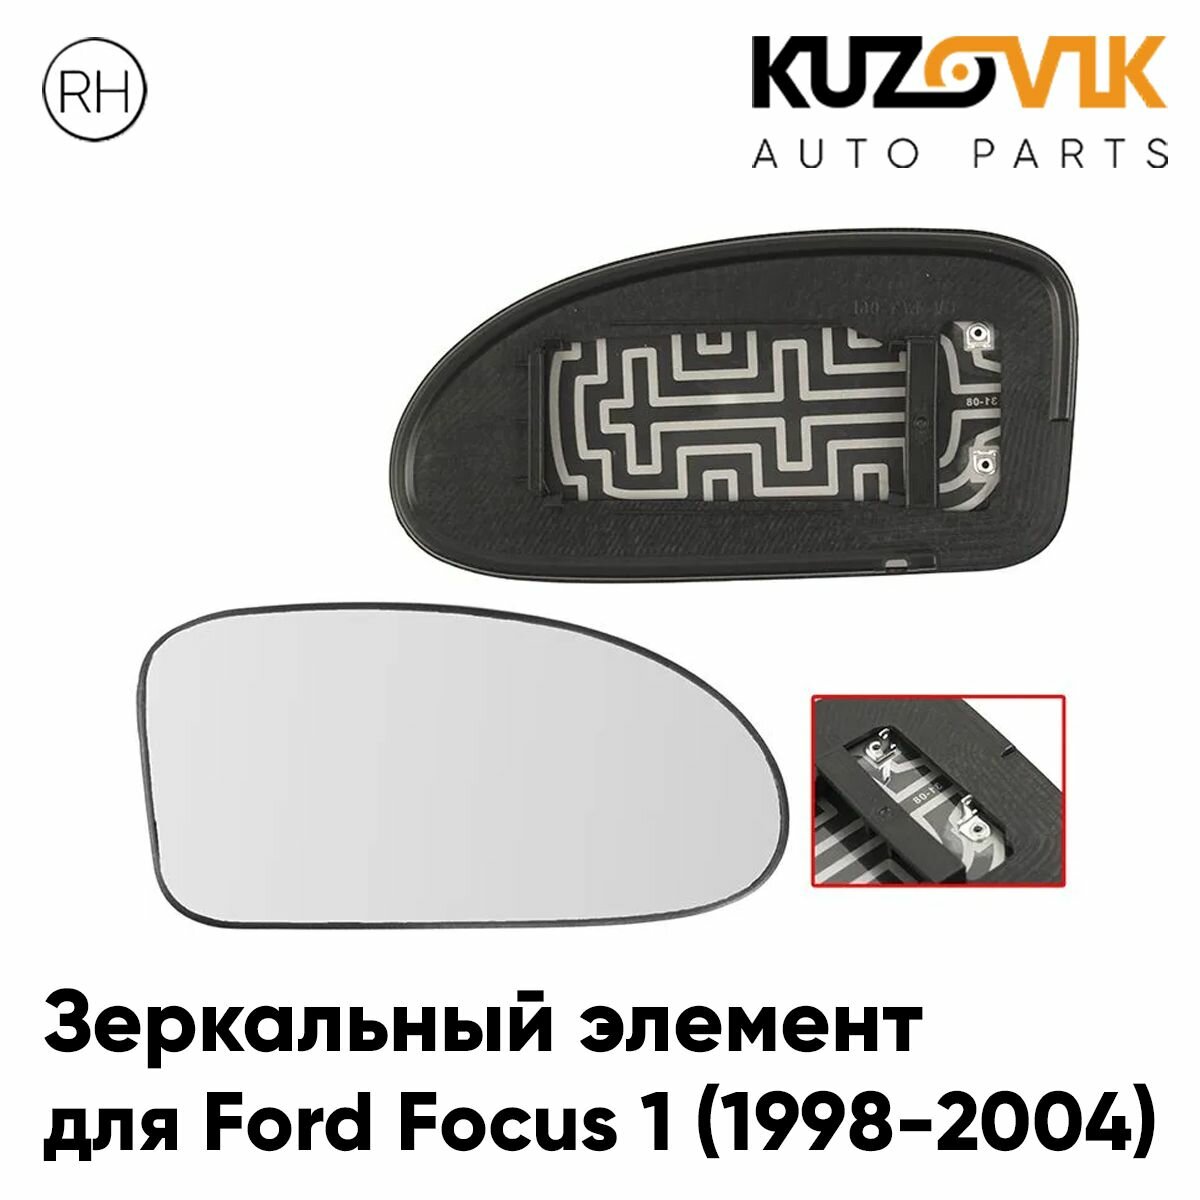 Зеркальный элемент для Форд Фокус Ford Focus 1 (1998-2004) сферический с обогревом, правое стекло зеркала